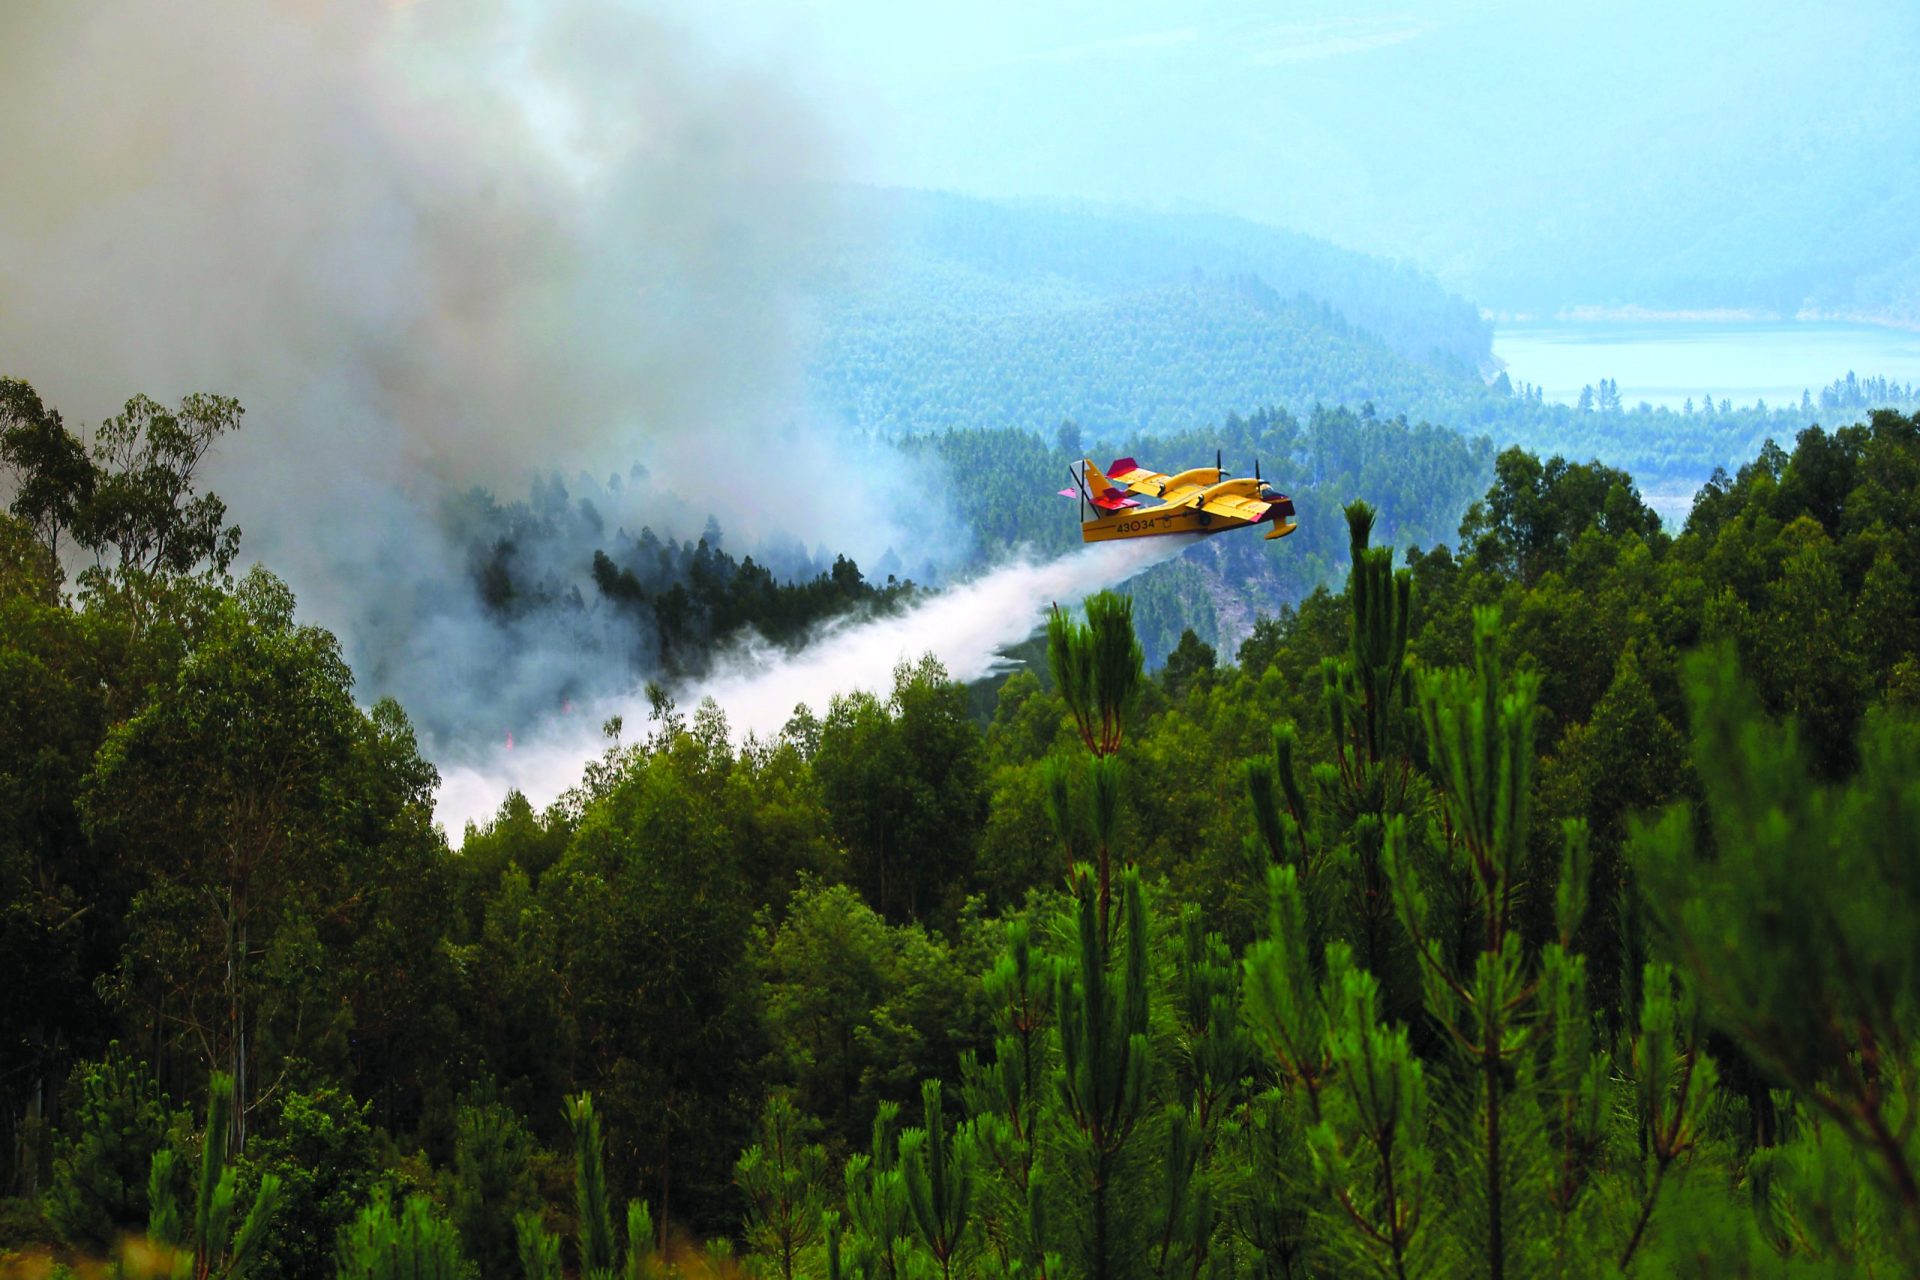 Proteção Civil. Desde 2006 que Portugal não tem em maio tão poucos aviões disponíveis para combater incêndios